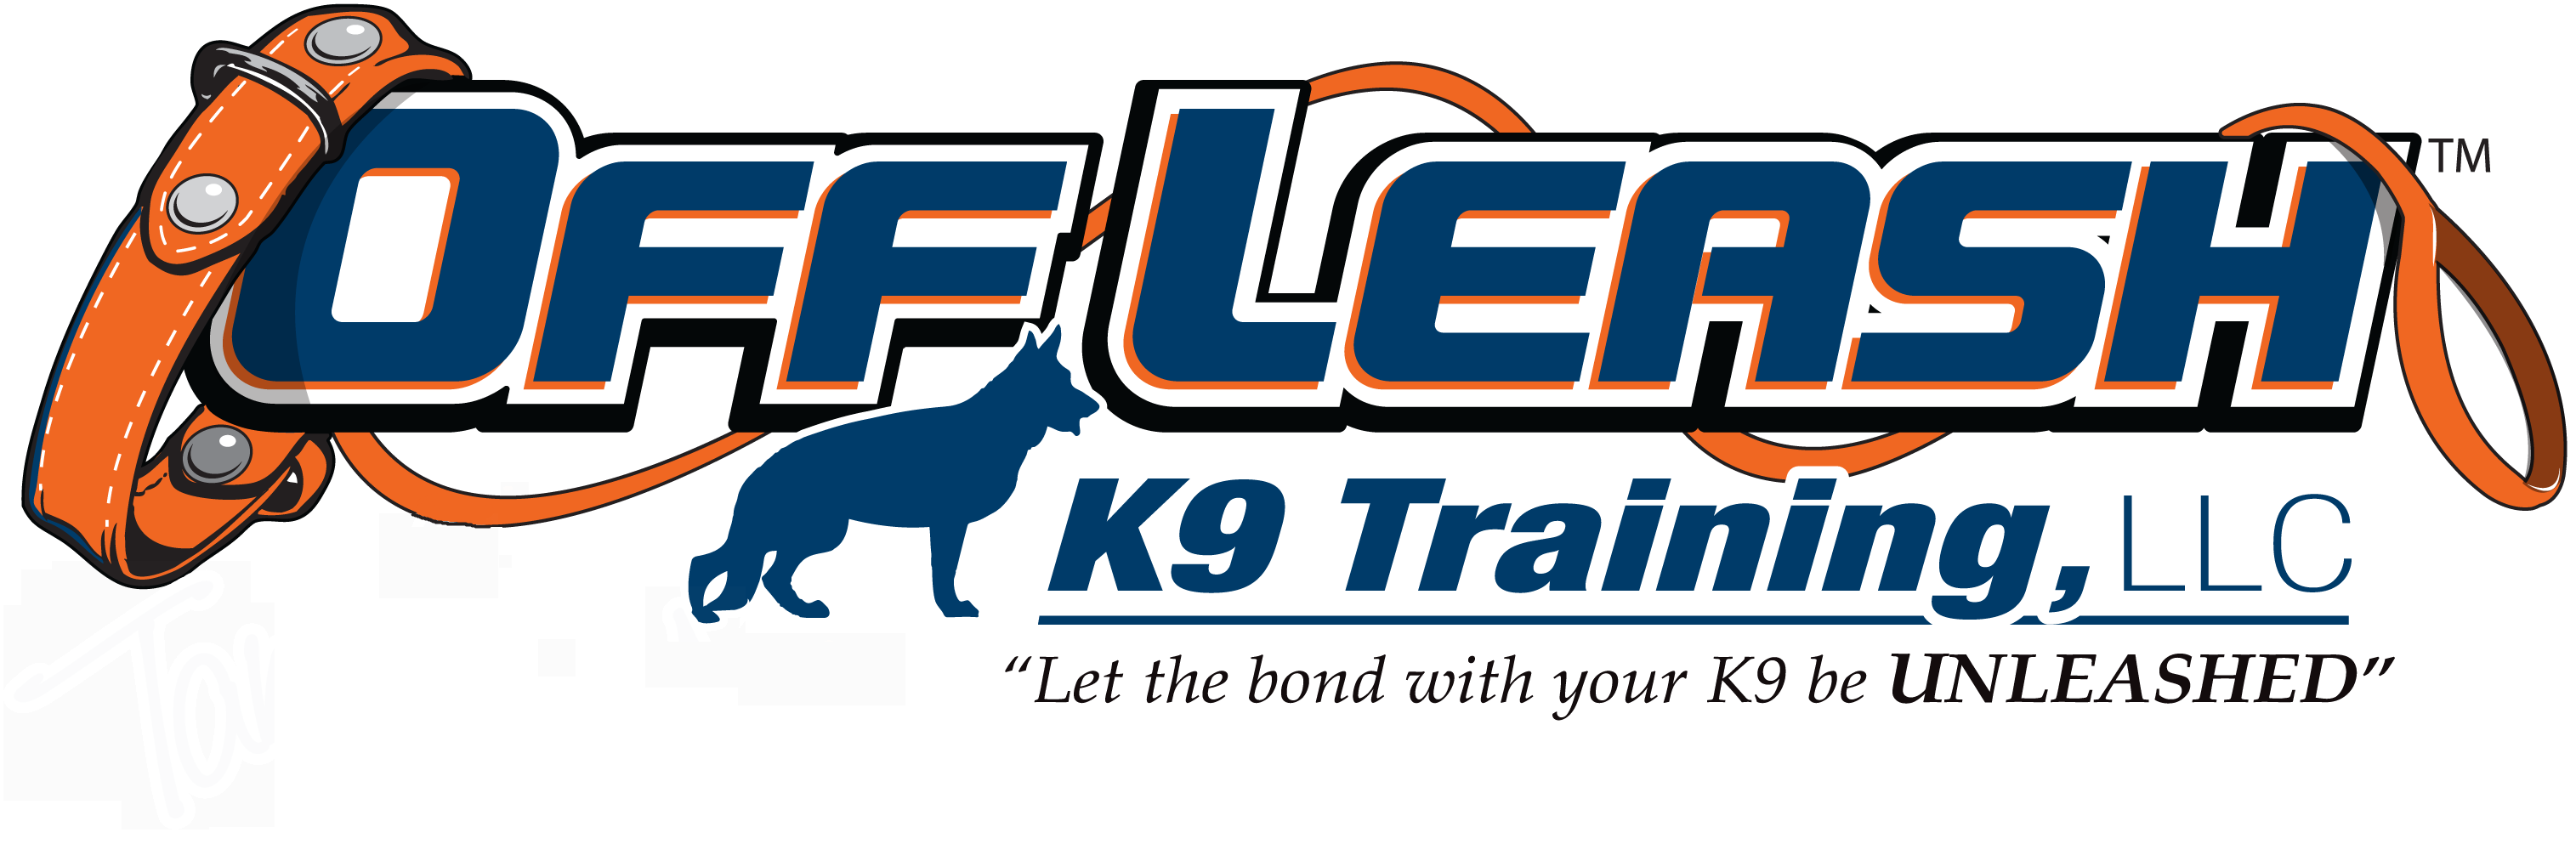 Hartford CT Offleash K9 Dog Training